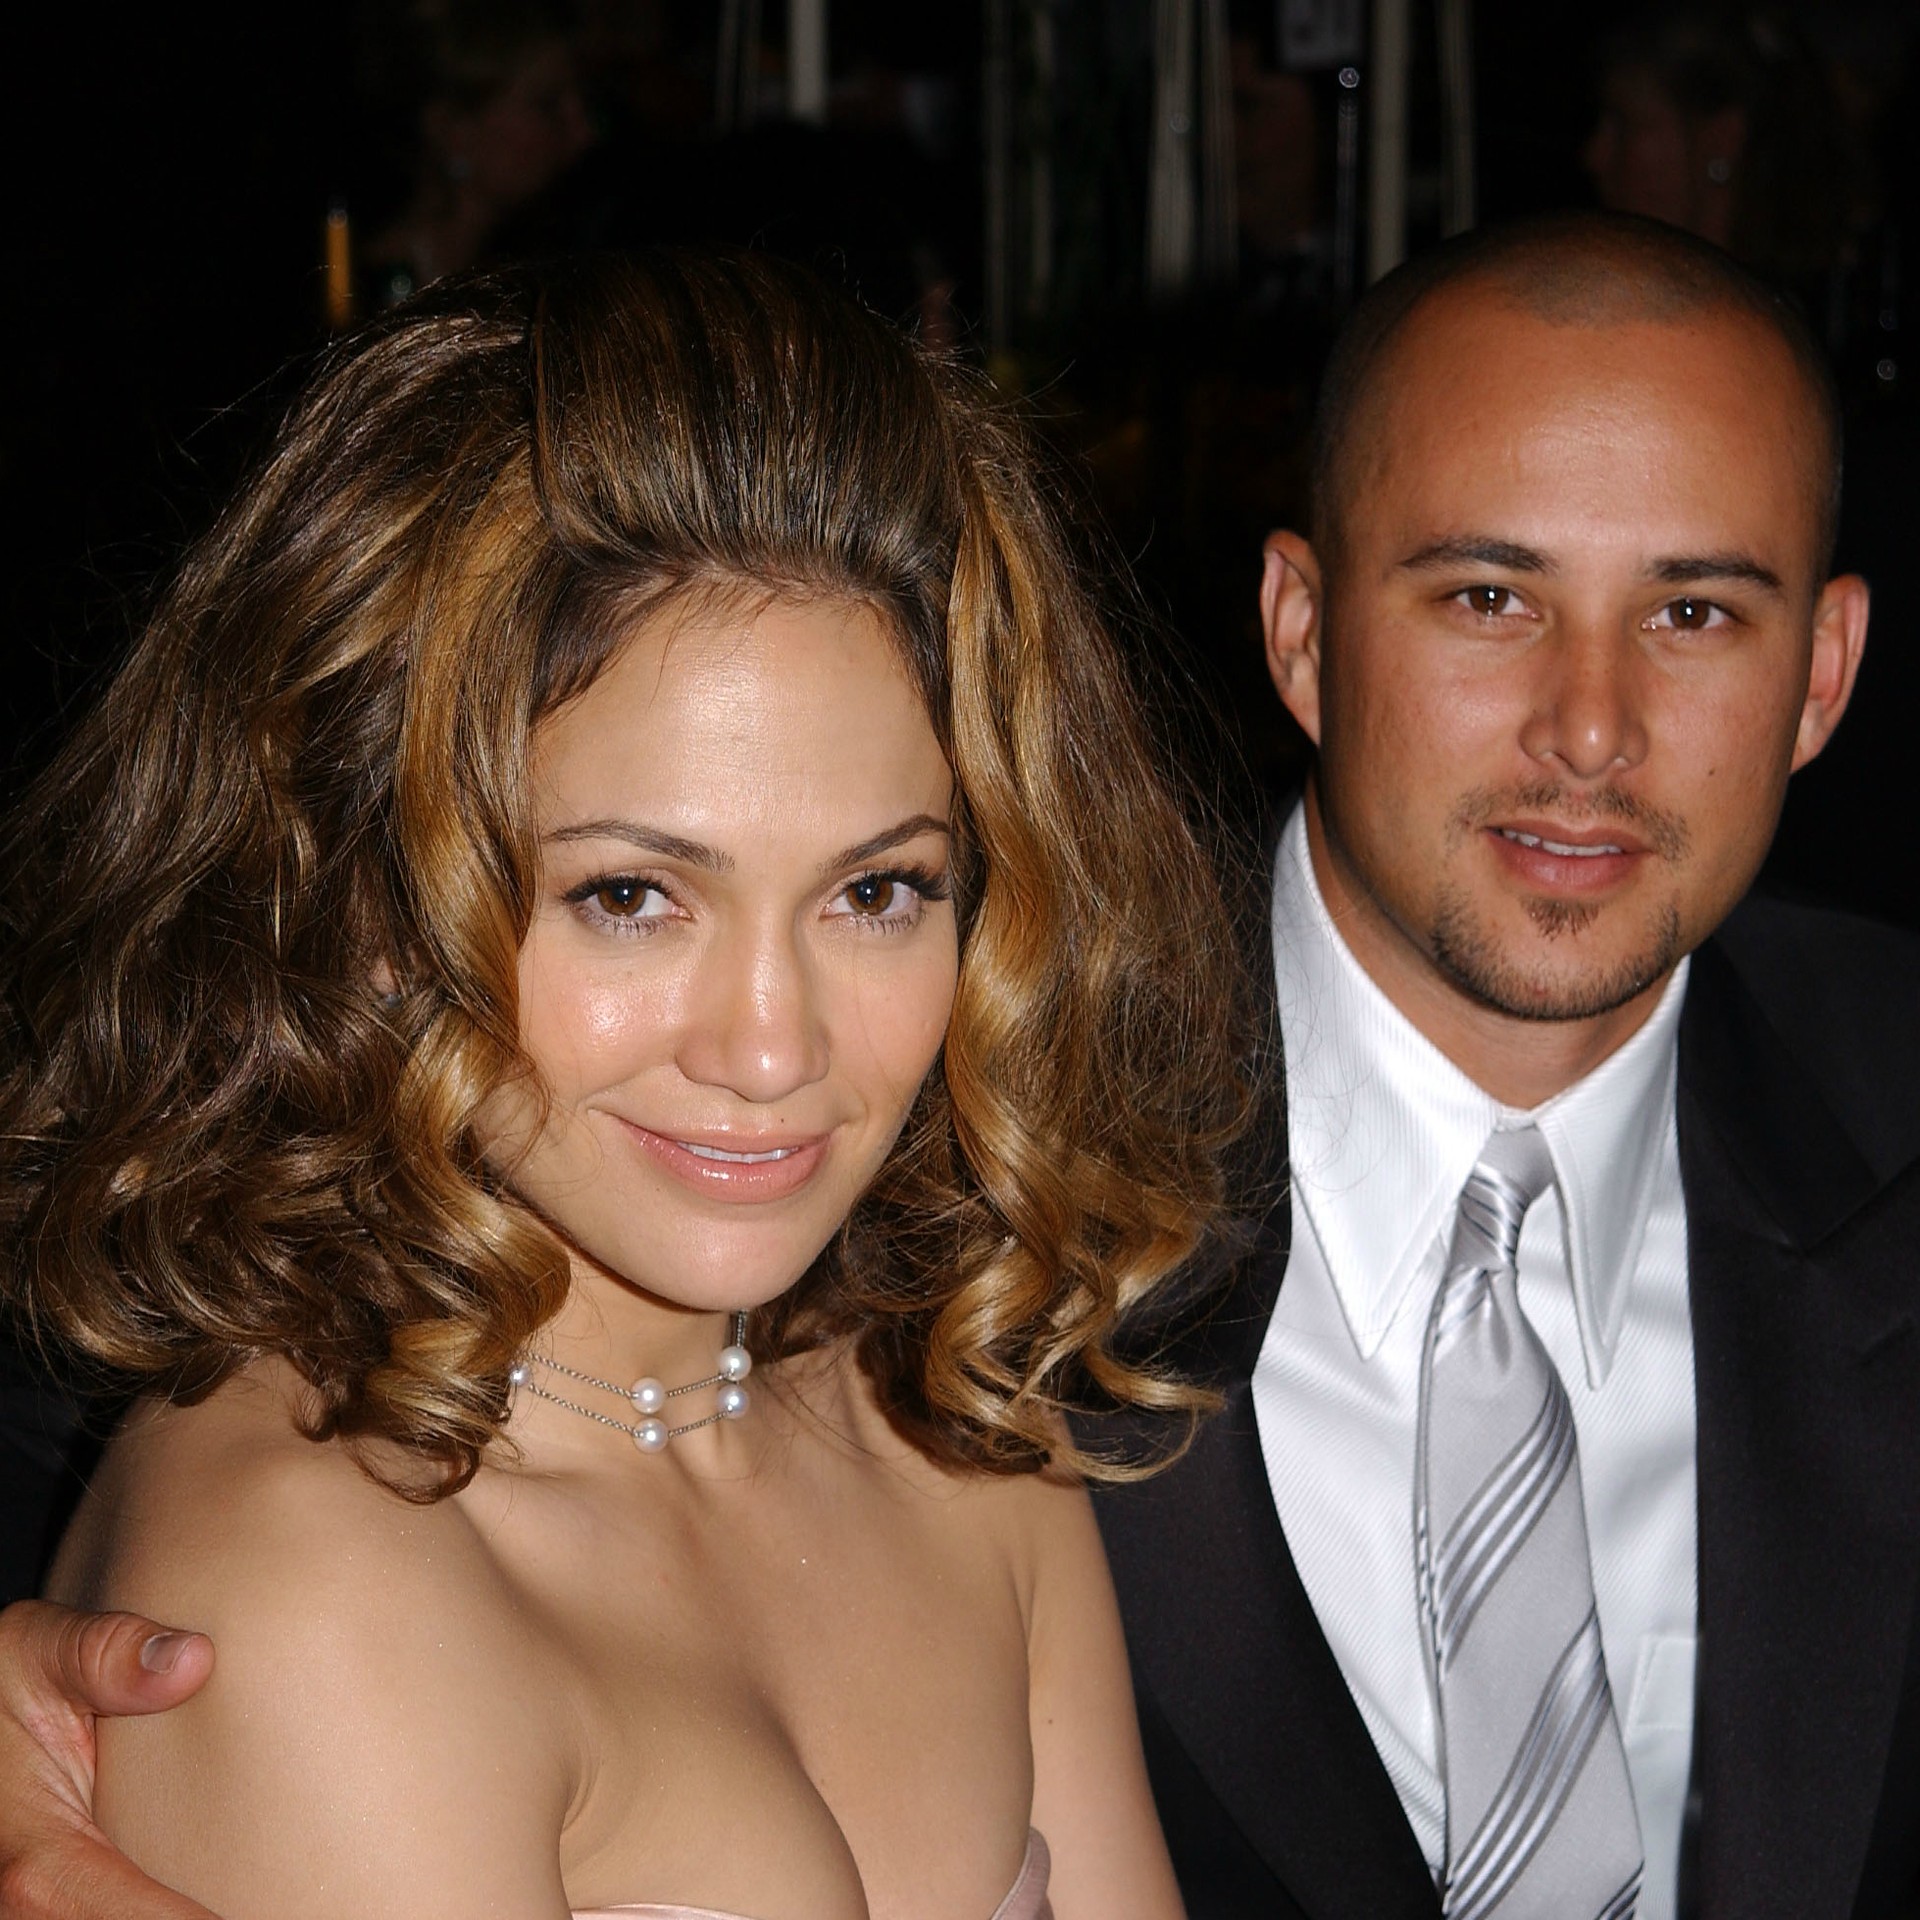 Jennifer Lopez e o ator e coreógrafo Cris Judd, ambos de 44 anos, se casaram em setembro de 2001. Em junho do ano seguinte, contaram que já estavam separados havia um mês. E antes de aquele ano acabar, em novembro, J.Lo ficou noiva do ator Ben Affleck. (Foto: Getty Images)